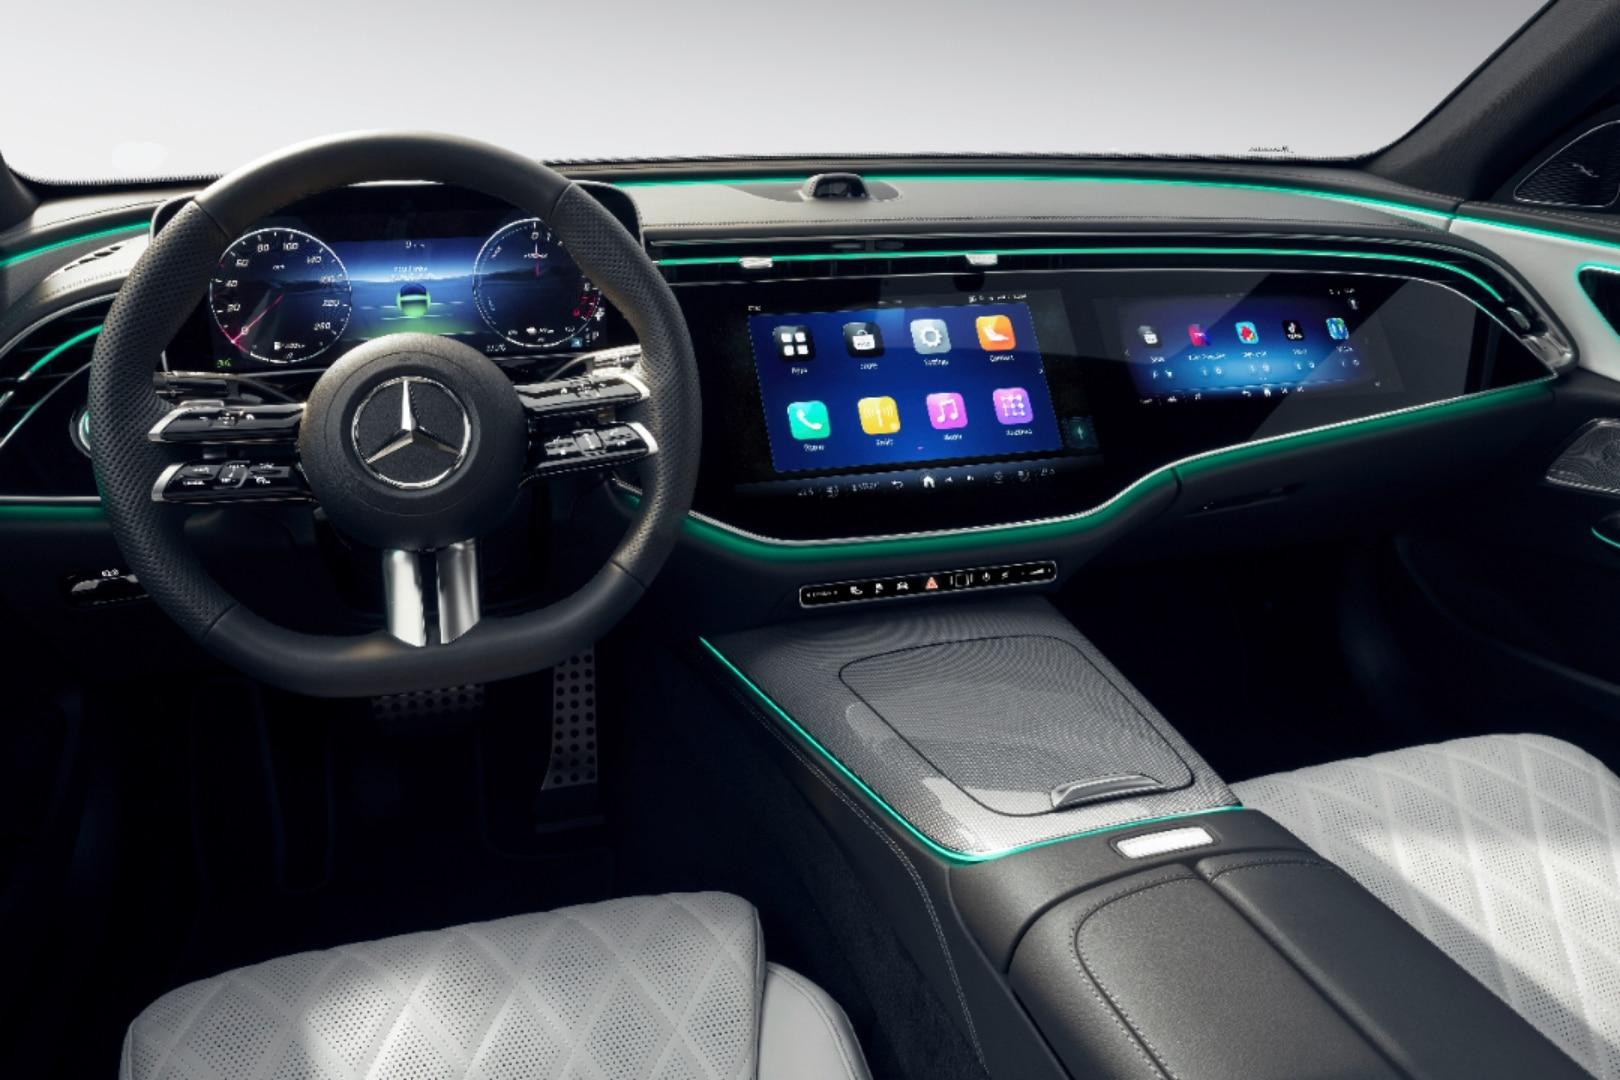 New Gen Mercedes-Benz E-Class Interior Is A Tech Fest, Even Gets A Selfie Camera